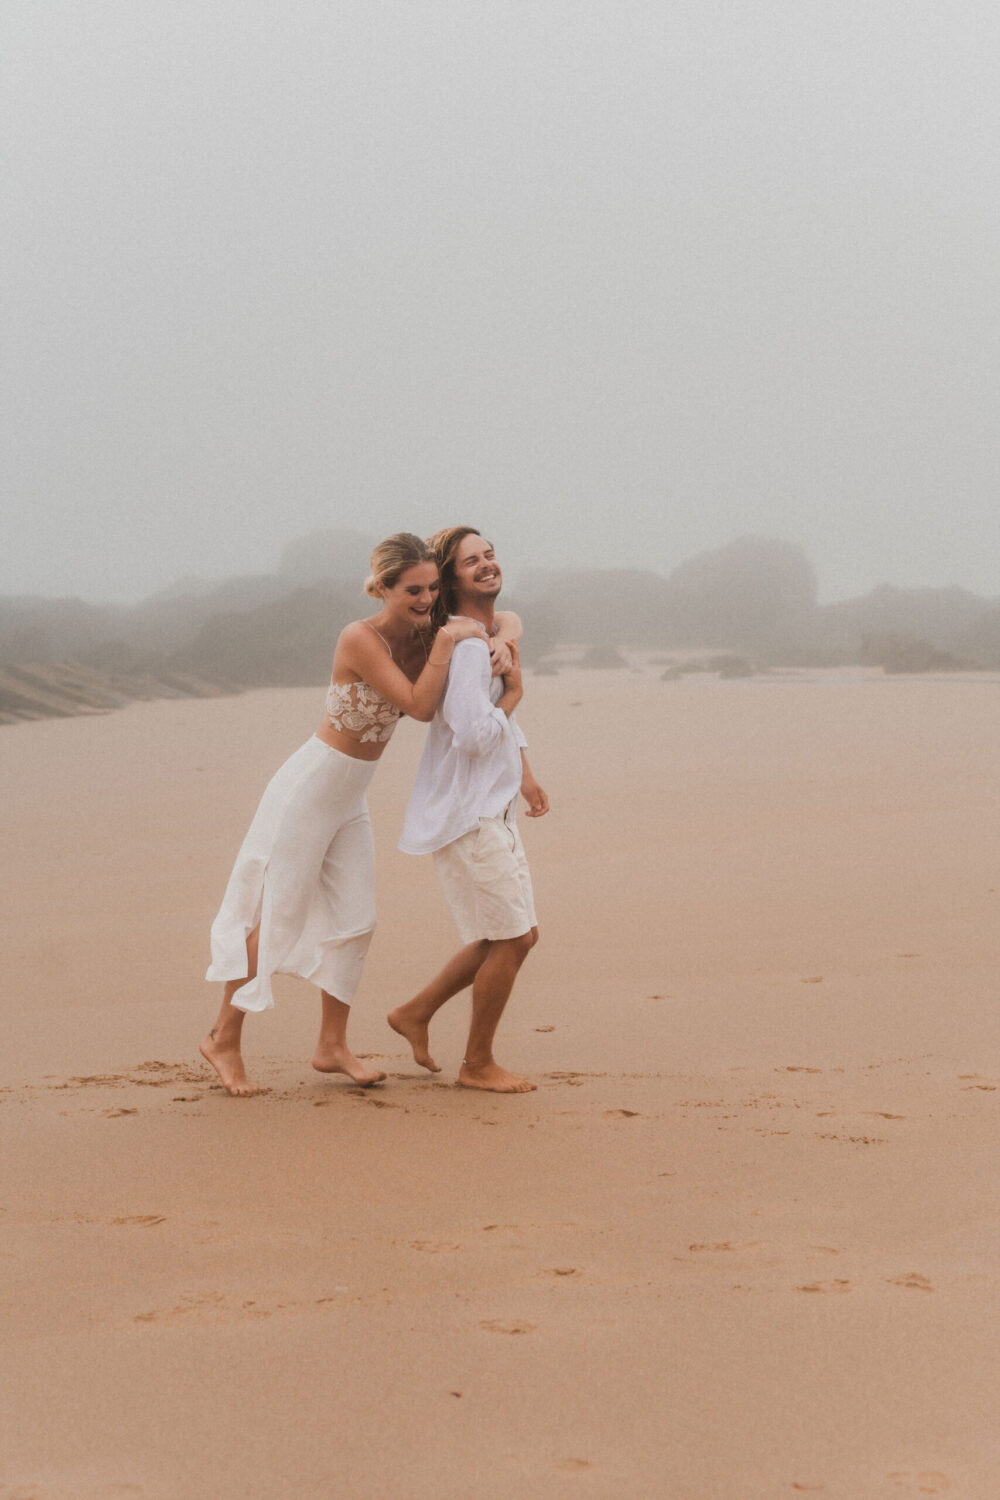 Deutsch: Braut und Bräutigam in weißen Outfits haben Spaß am Strand Englisch: Bride and groom in white outfits having fun on the beach